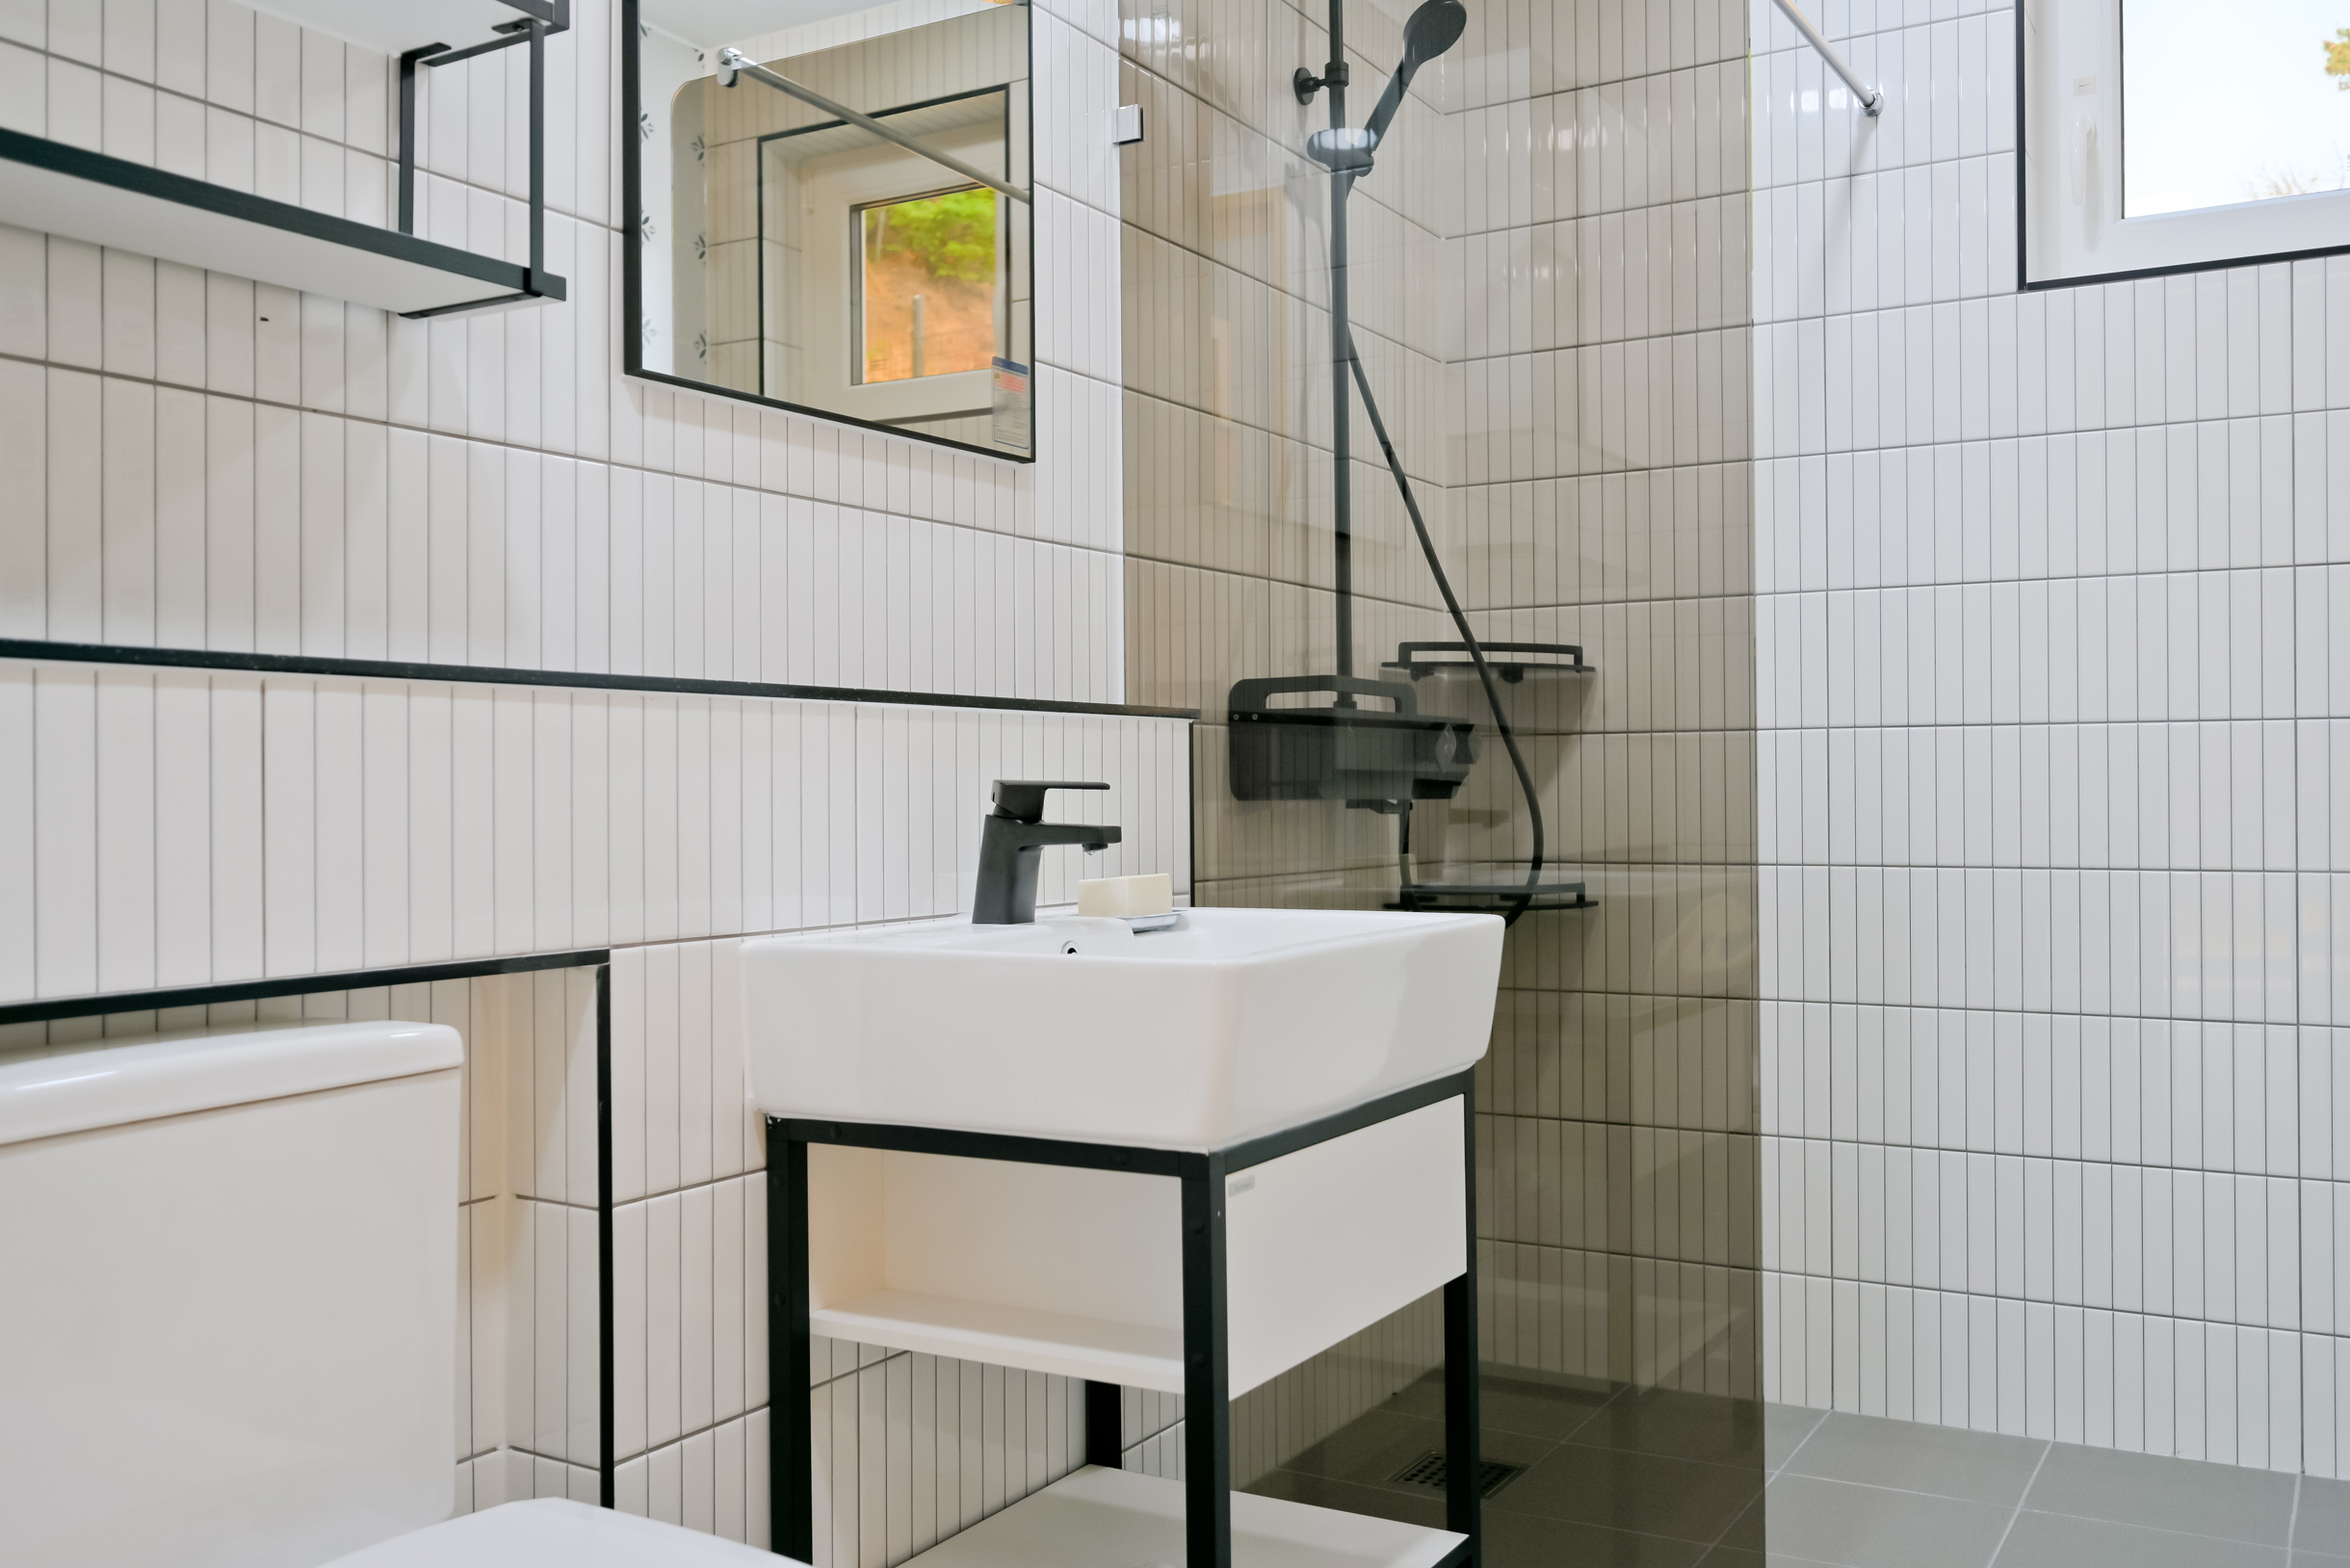 Та же узкая белая плитка, но в модной раскладке. Добавить сюда декор, и будет современная скандинавская ванная. Фотография: go daewan / Shutterstock / FOTODOM